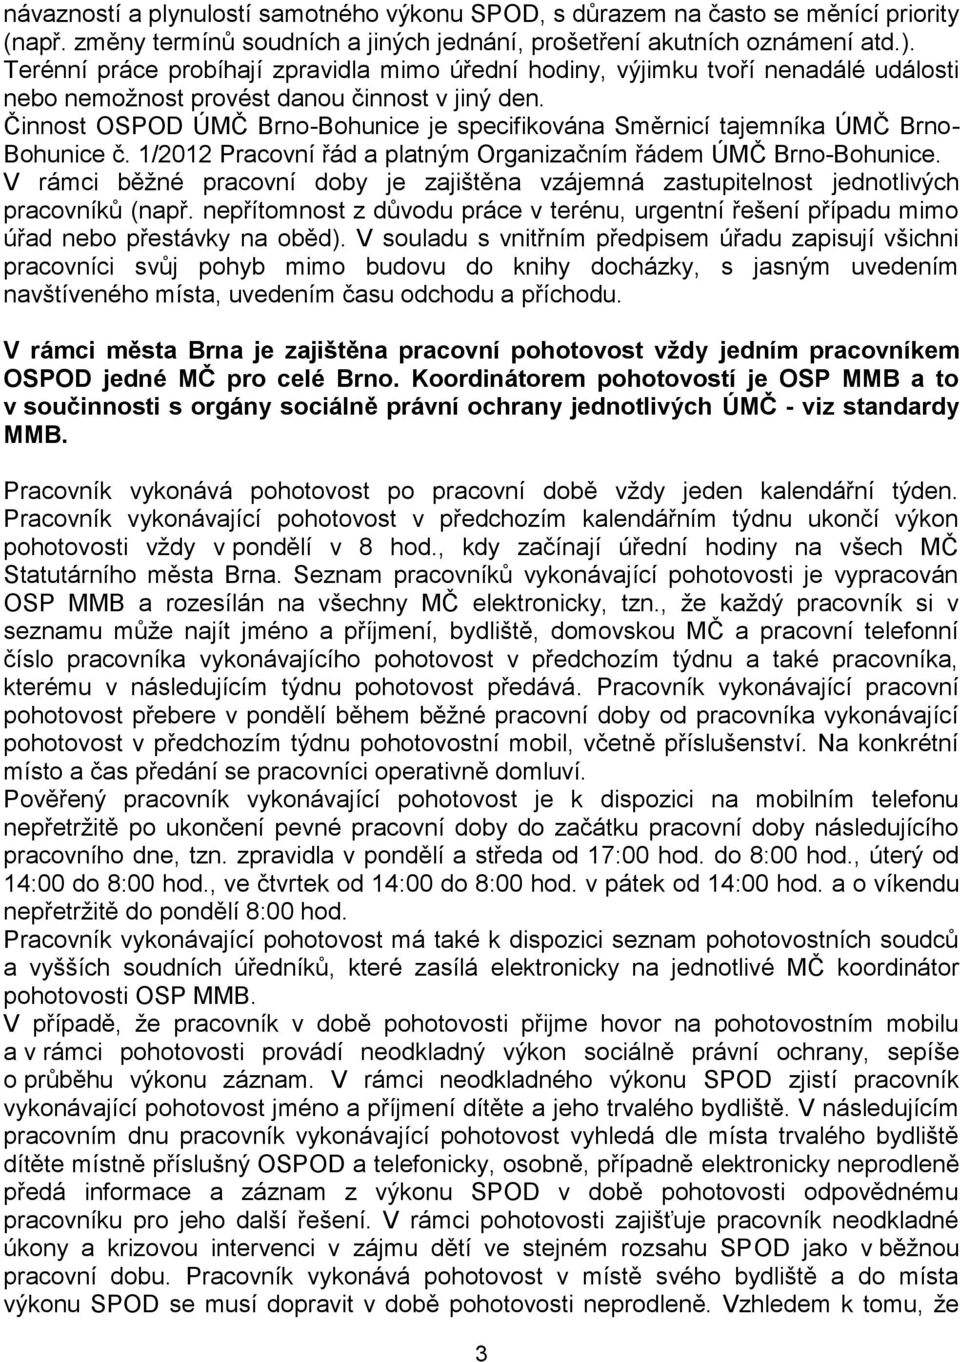 Činnost OSPOD ÚMČ Brno-Bohunice je specifikována Směrnicí tajemníka ÚMČ Brno- Bohunice č. 1/2012 Pracovní řád a platným Organizačním řádem ÚMČ Brno-Bohunice.